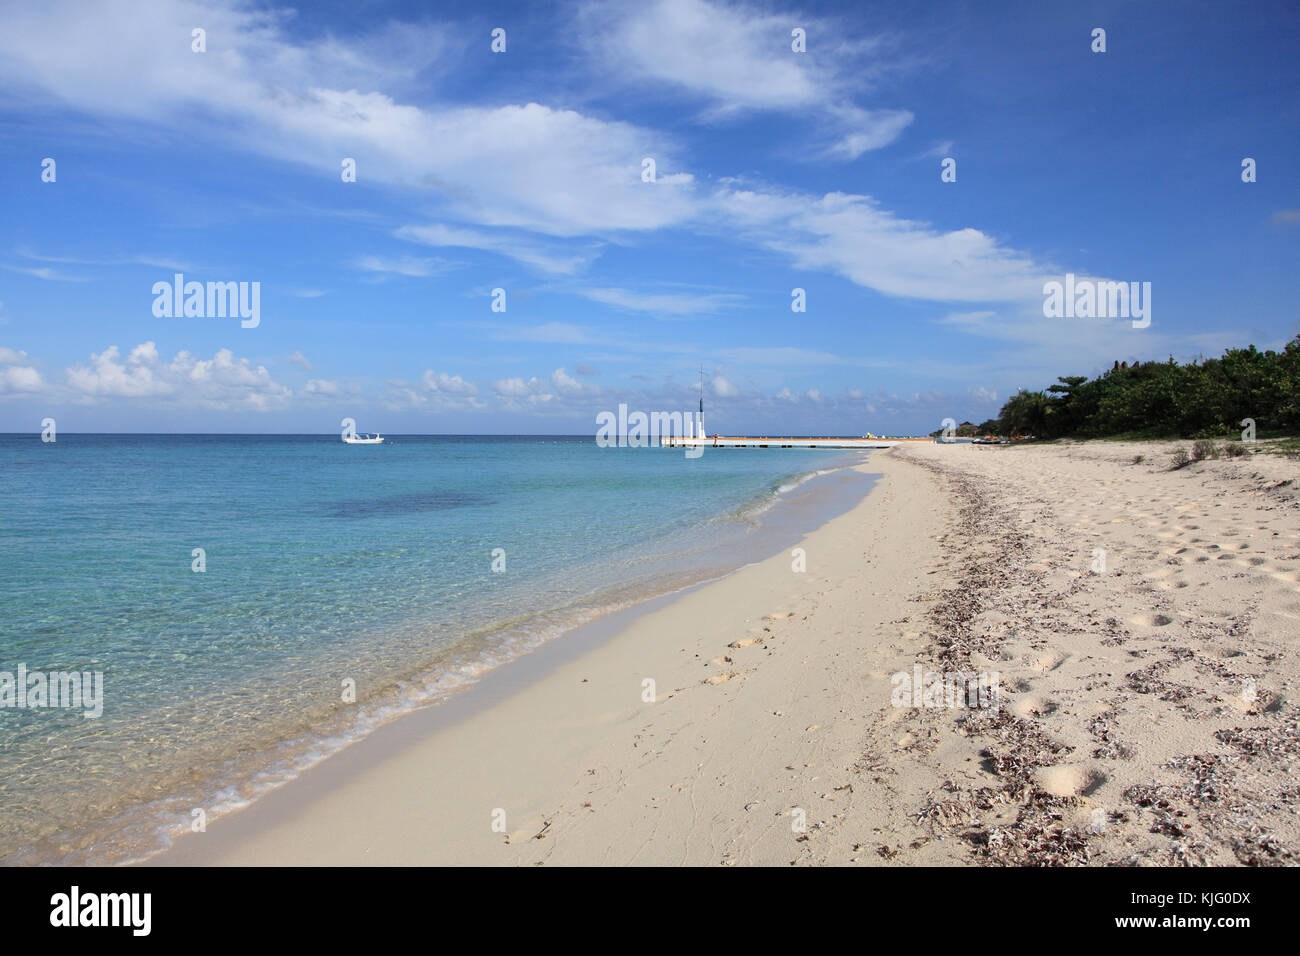 San Francisco Beach, Caribbean Ocean, Cozumel Island, Isla de Cozumel, Quintana Roo, Mexico Stock Photo